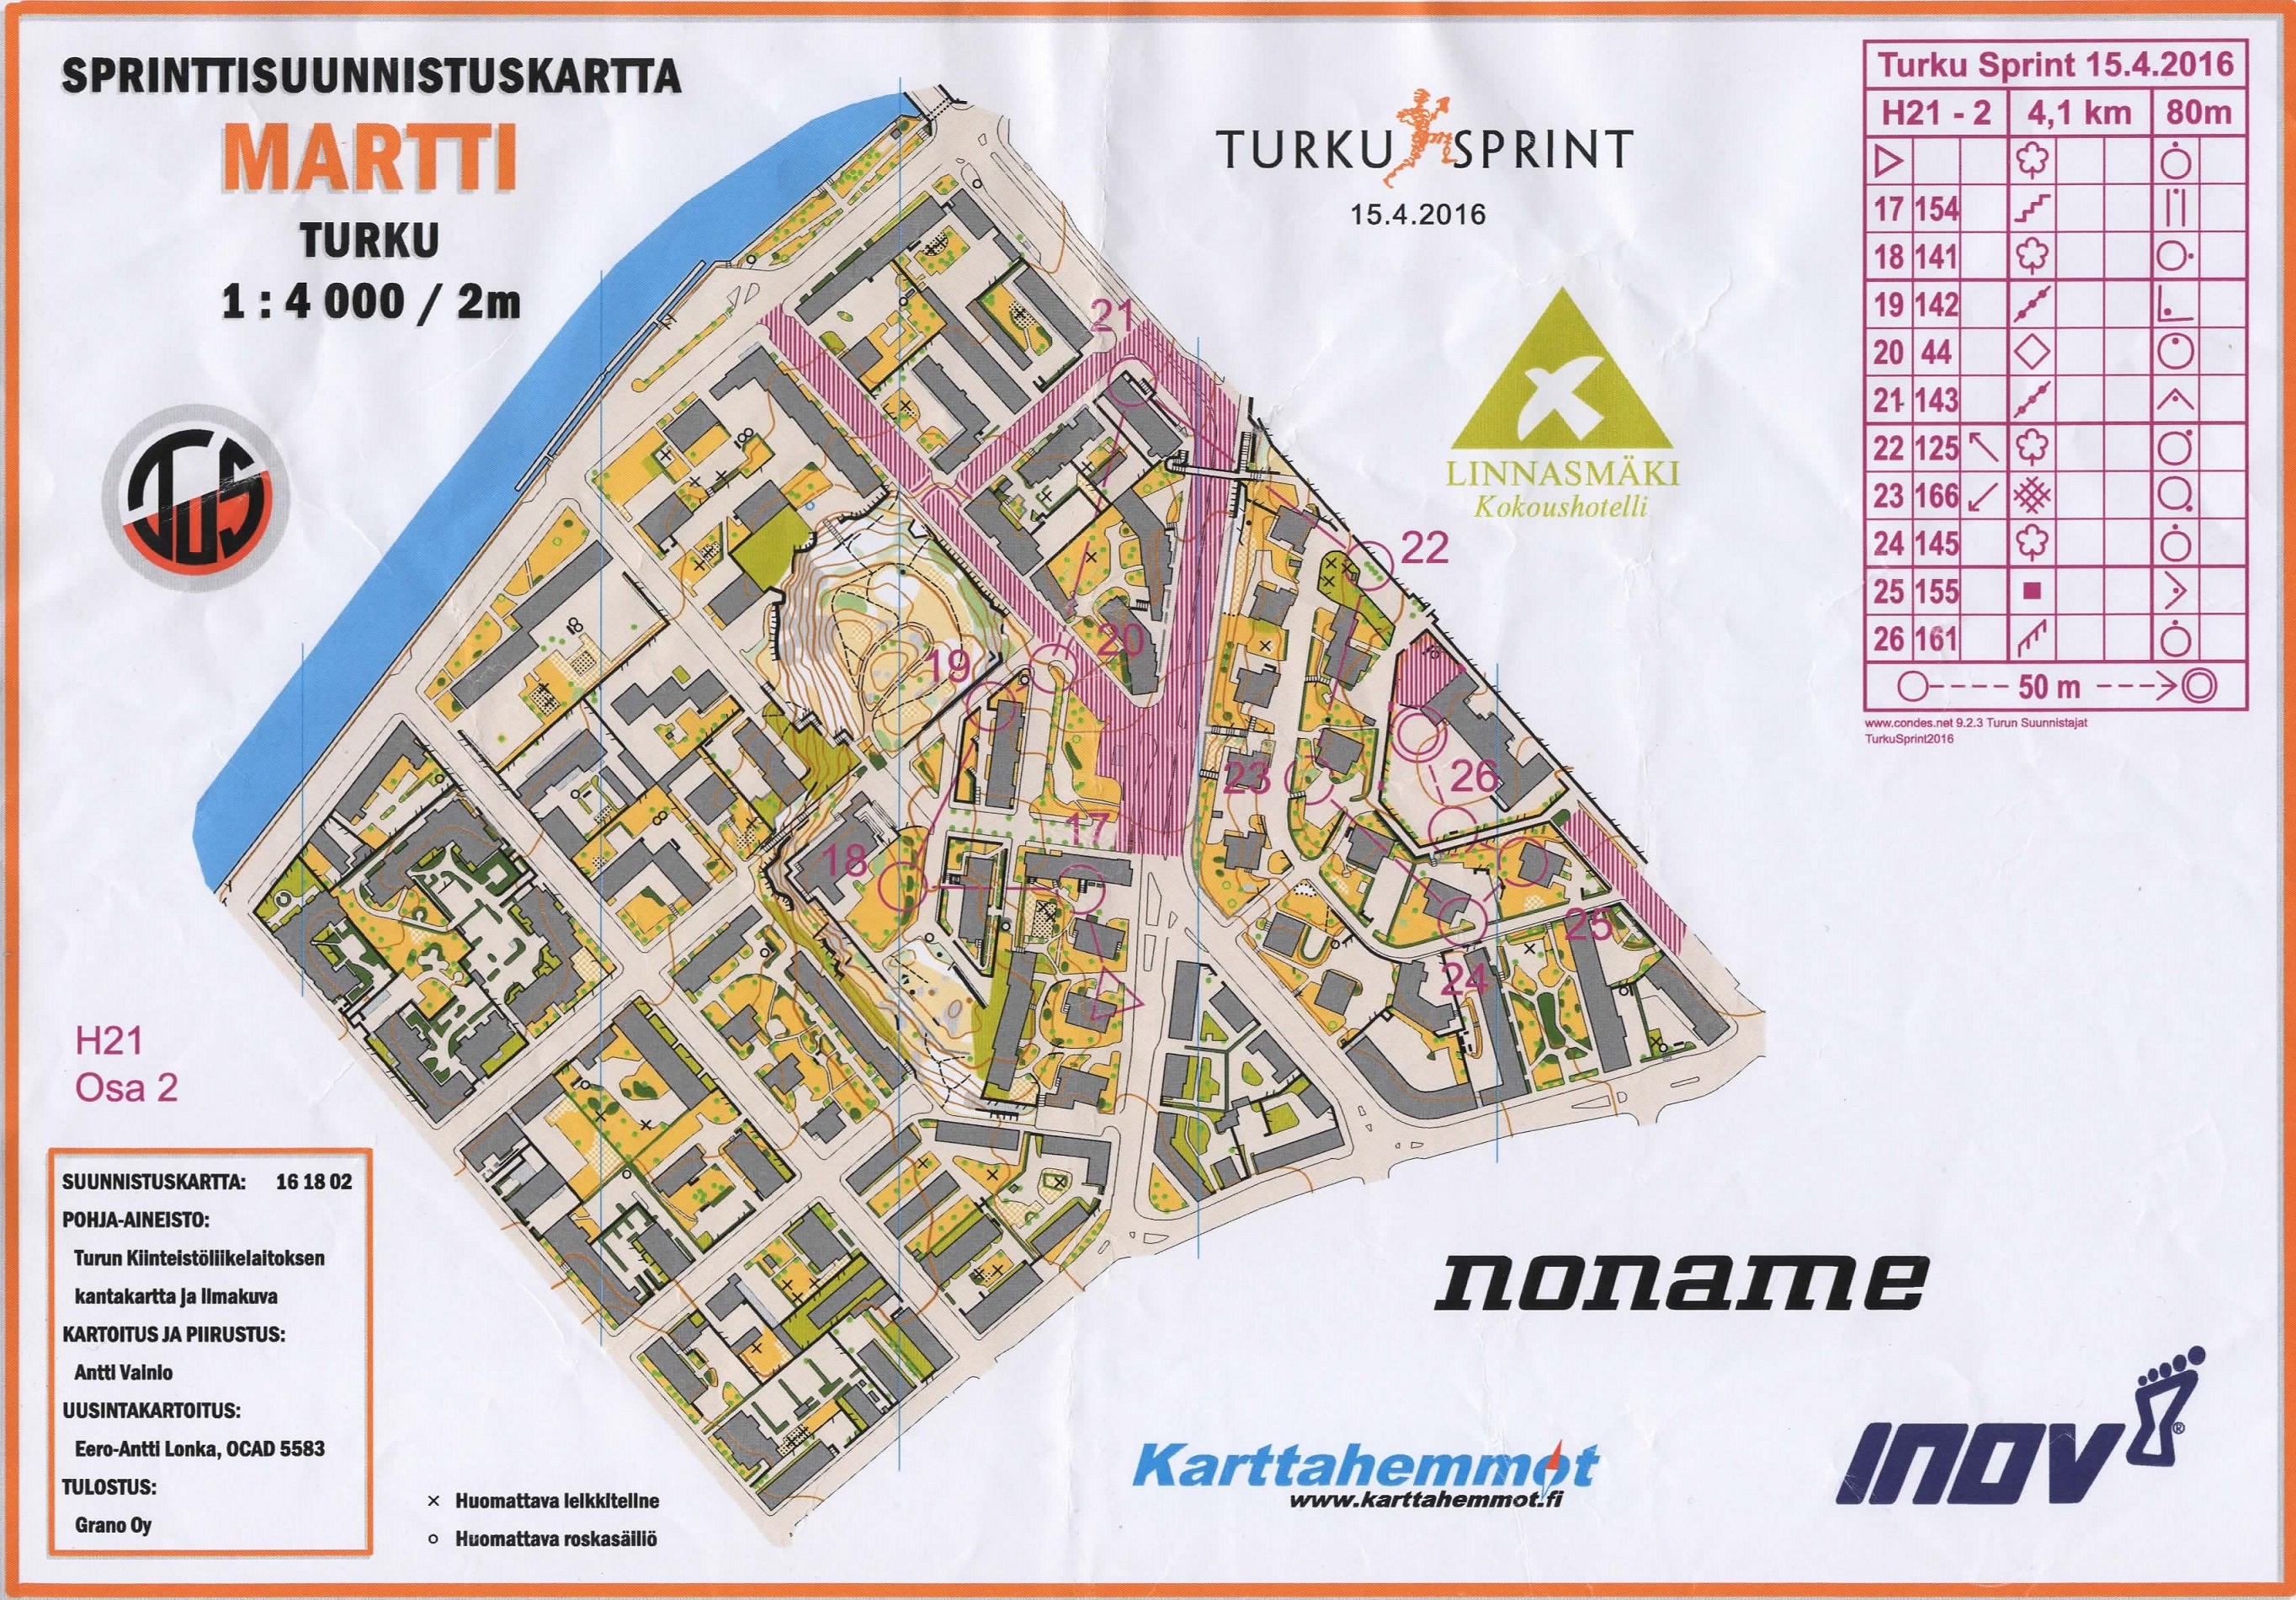 Turku Sprint, part 2 (15-04-2016)